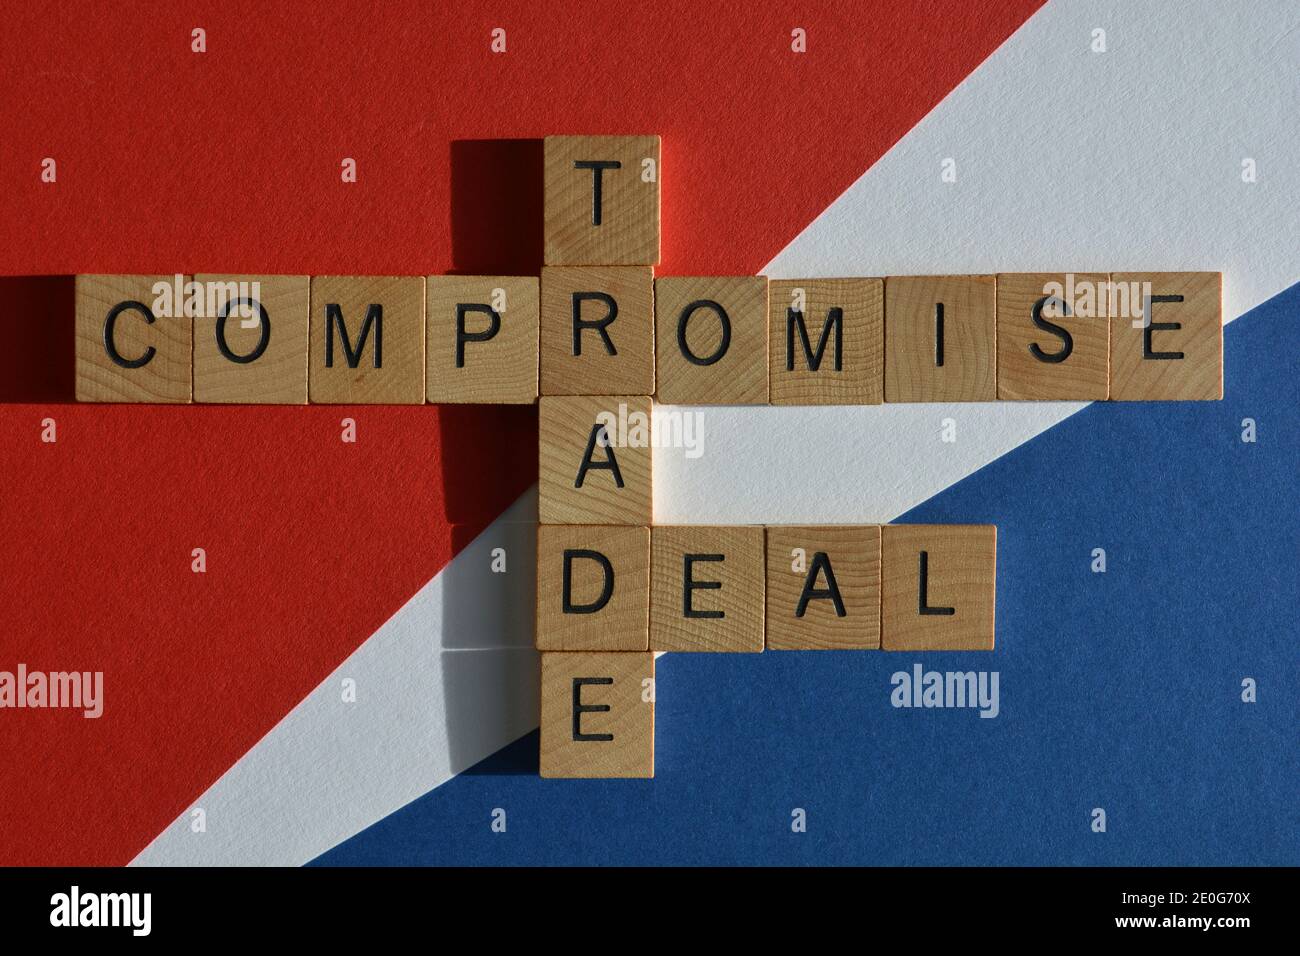 Kompromiss, Handel, Deal, Wörter in Kreuzworträtsel auf rotem, weißem und blauem Hintergrund Stockfoto